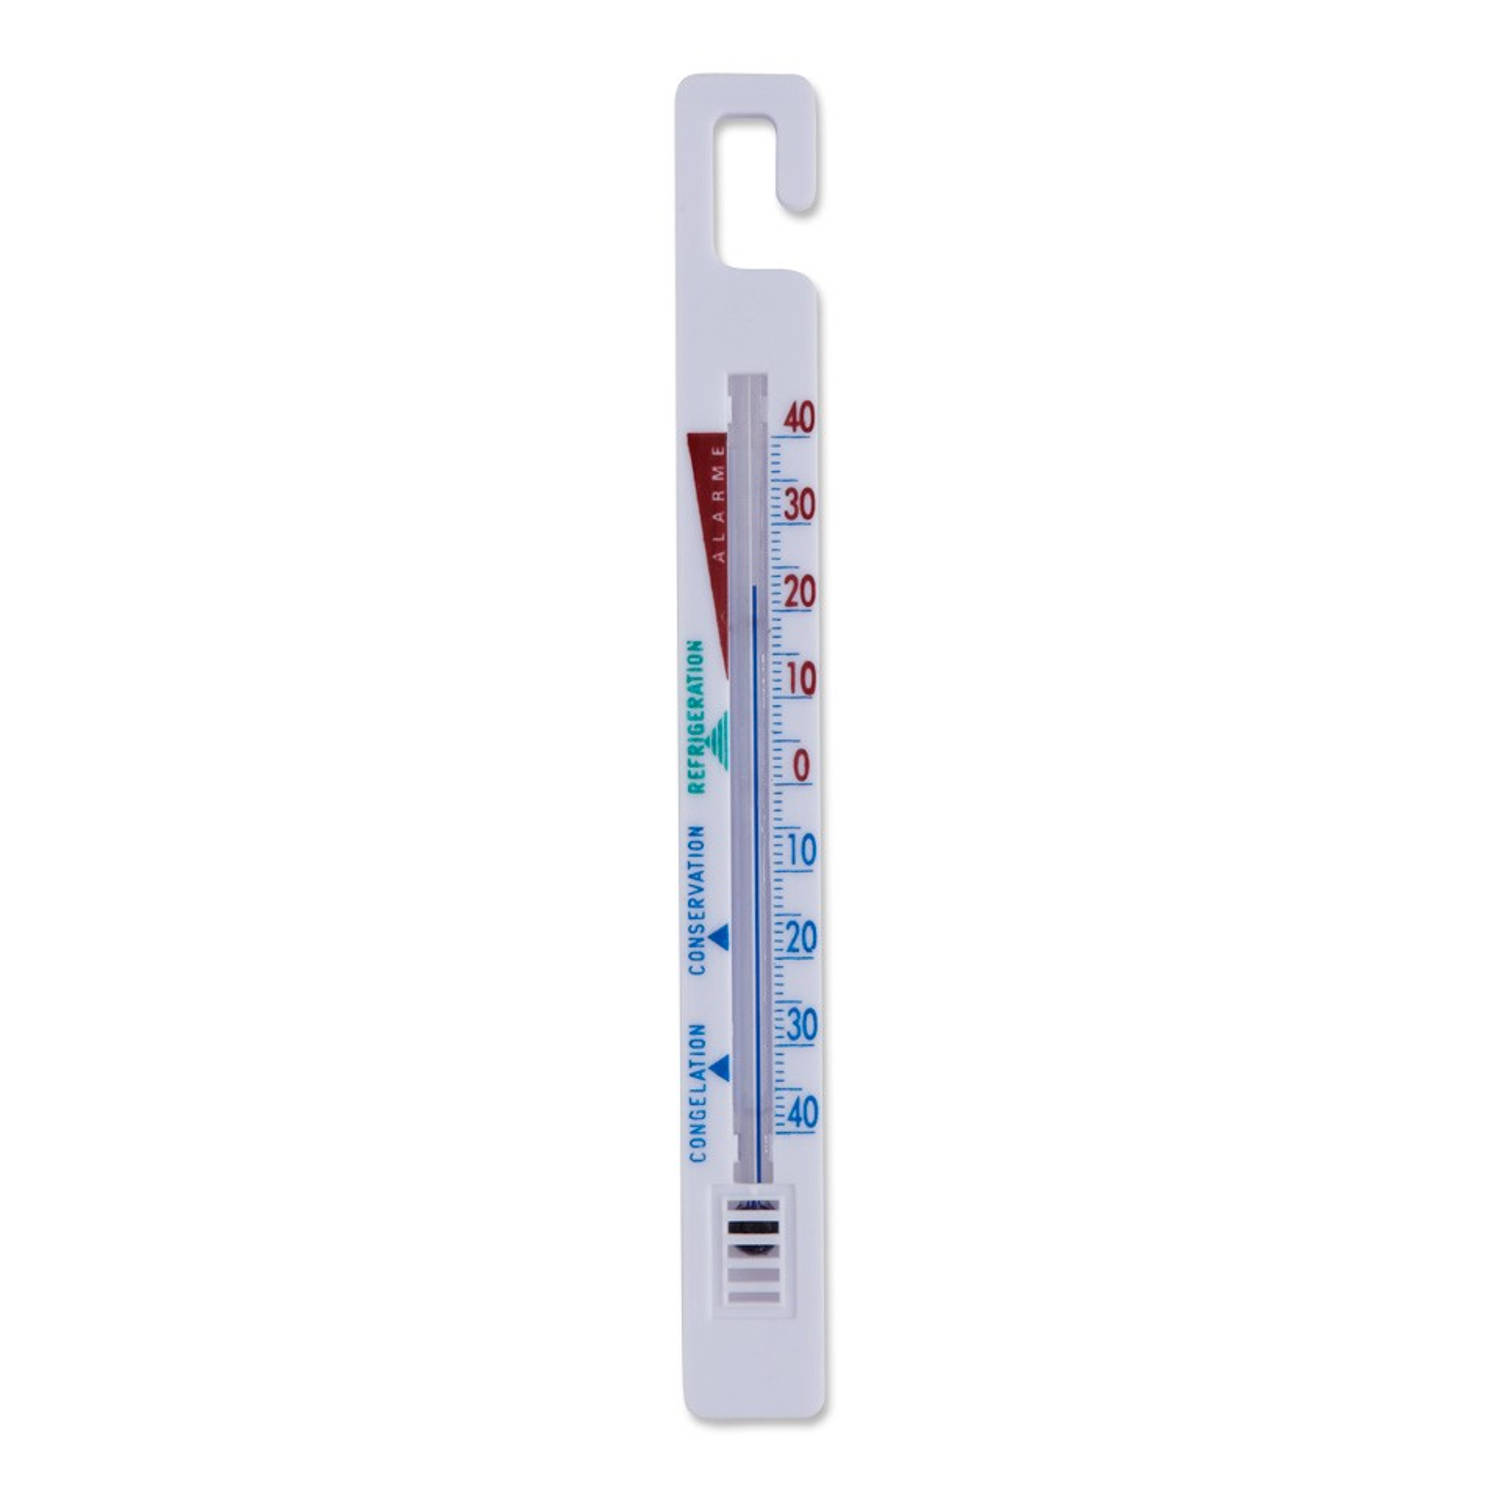 Scherm voorbeeld vertrouwen Handy koelkast thermometer | Blokker